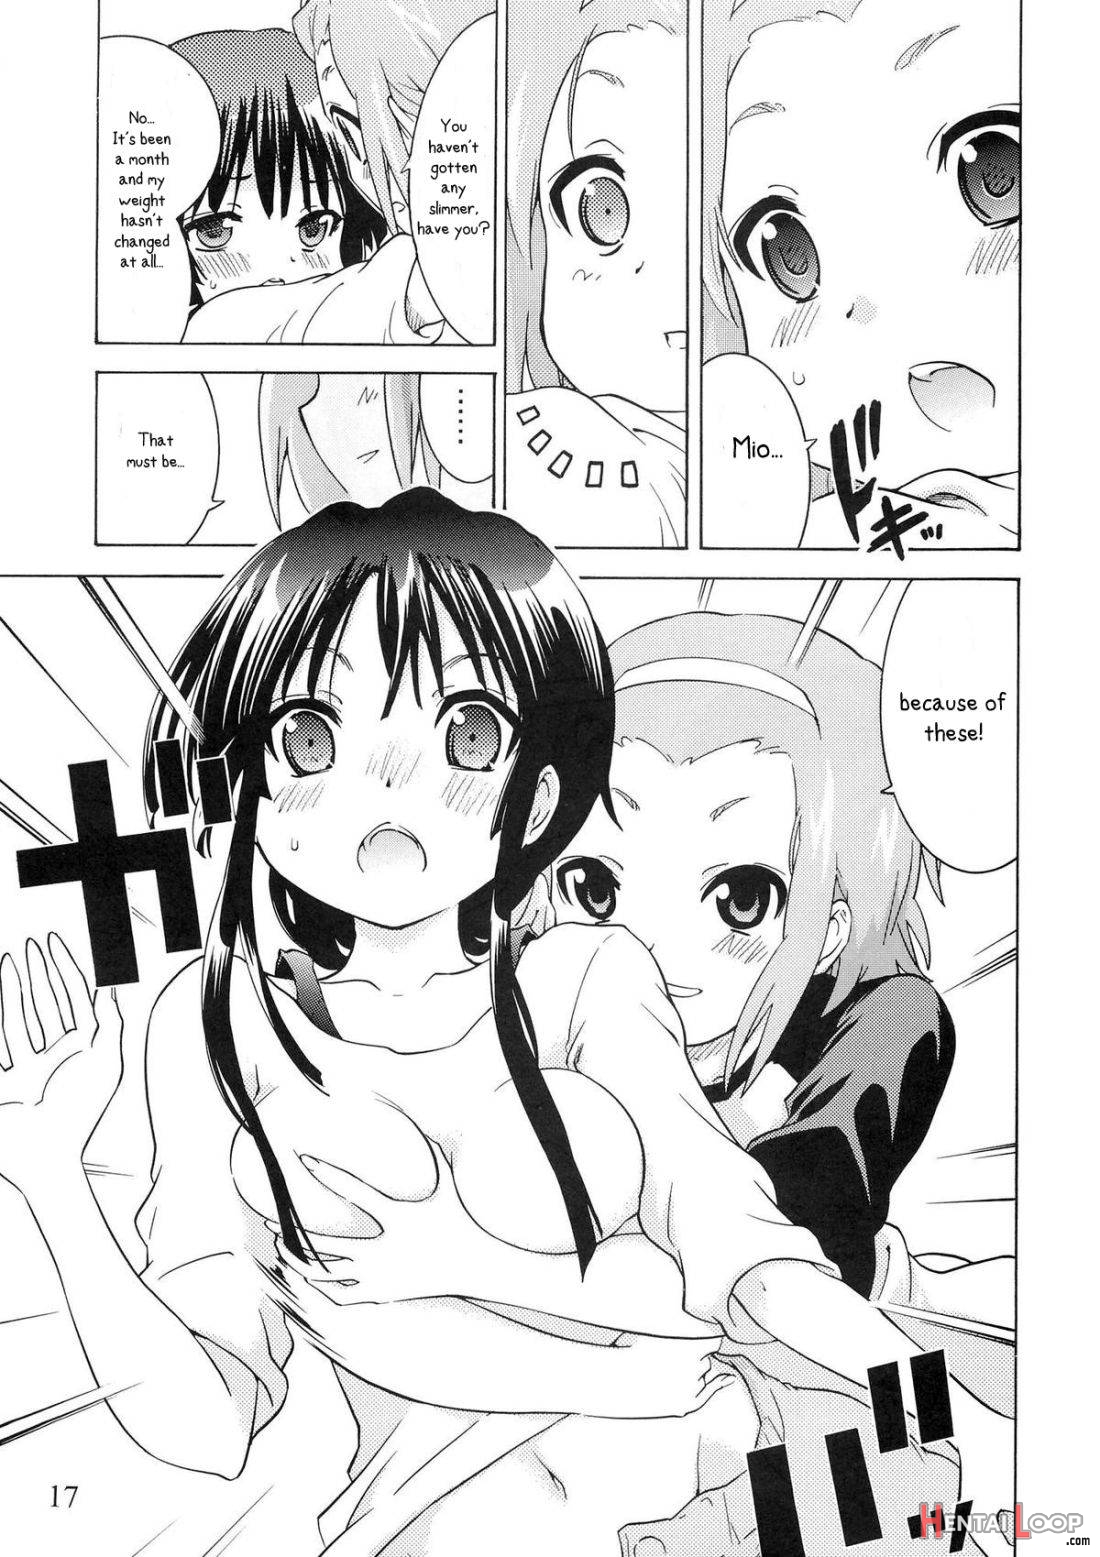 Yuri-on! #2 “kosokoso Mio-chan!” page 15